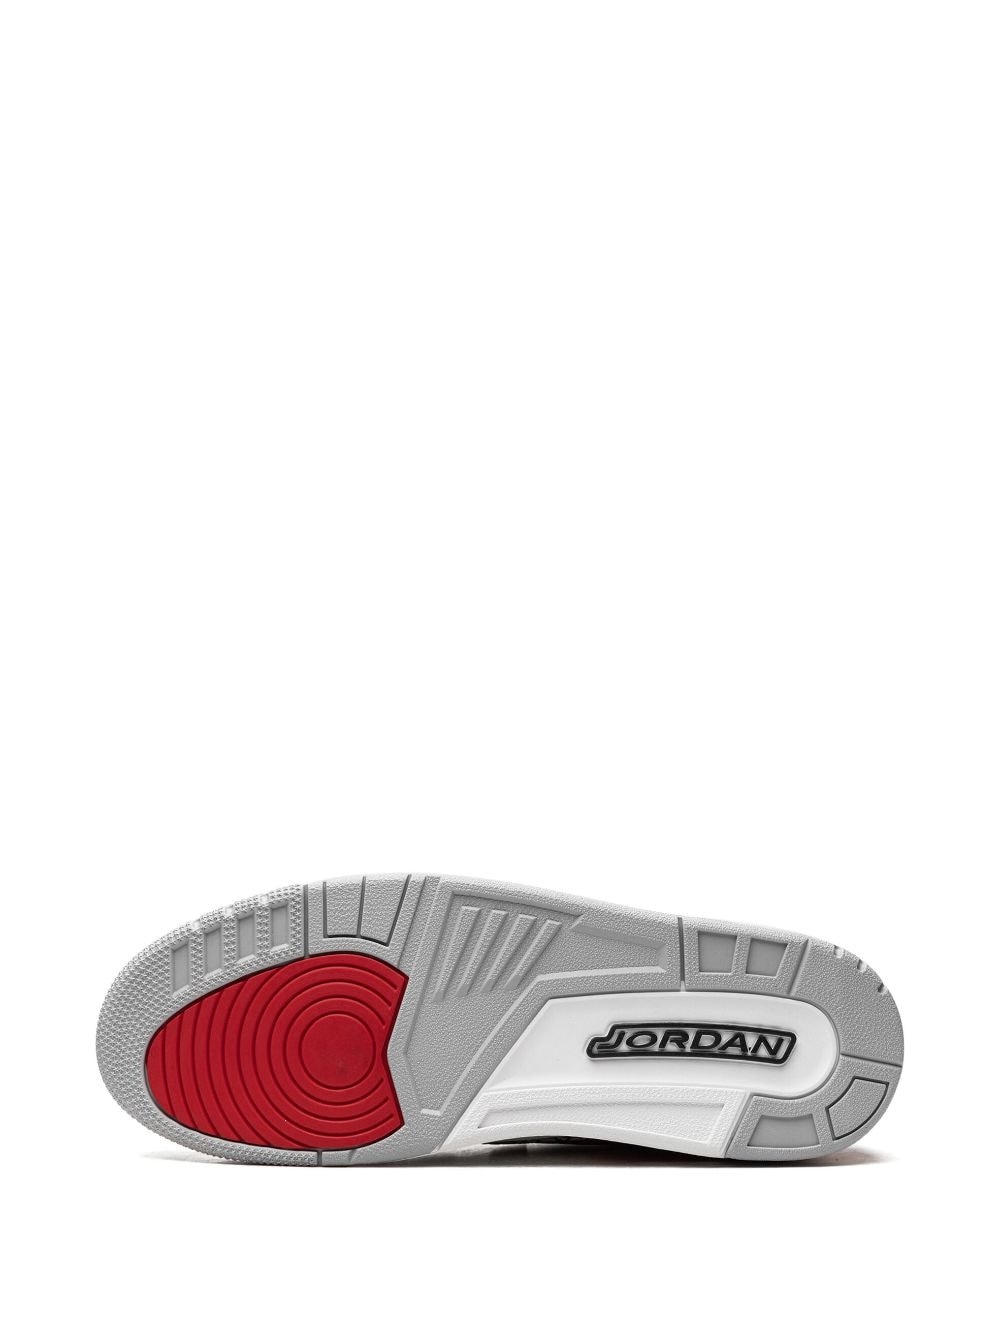 Air Jordan Legacy 312 Low "Fire Red" sneakers - 4